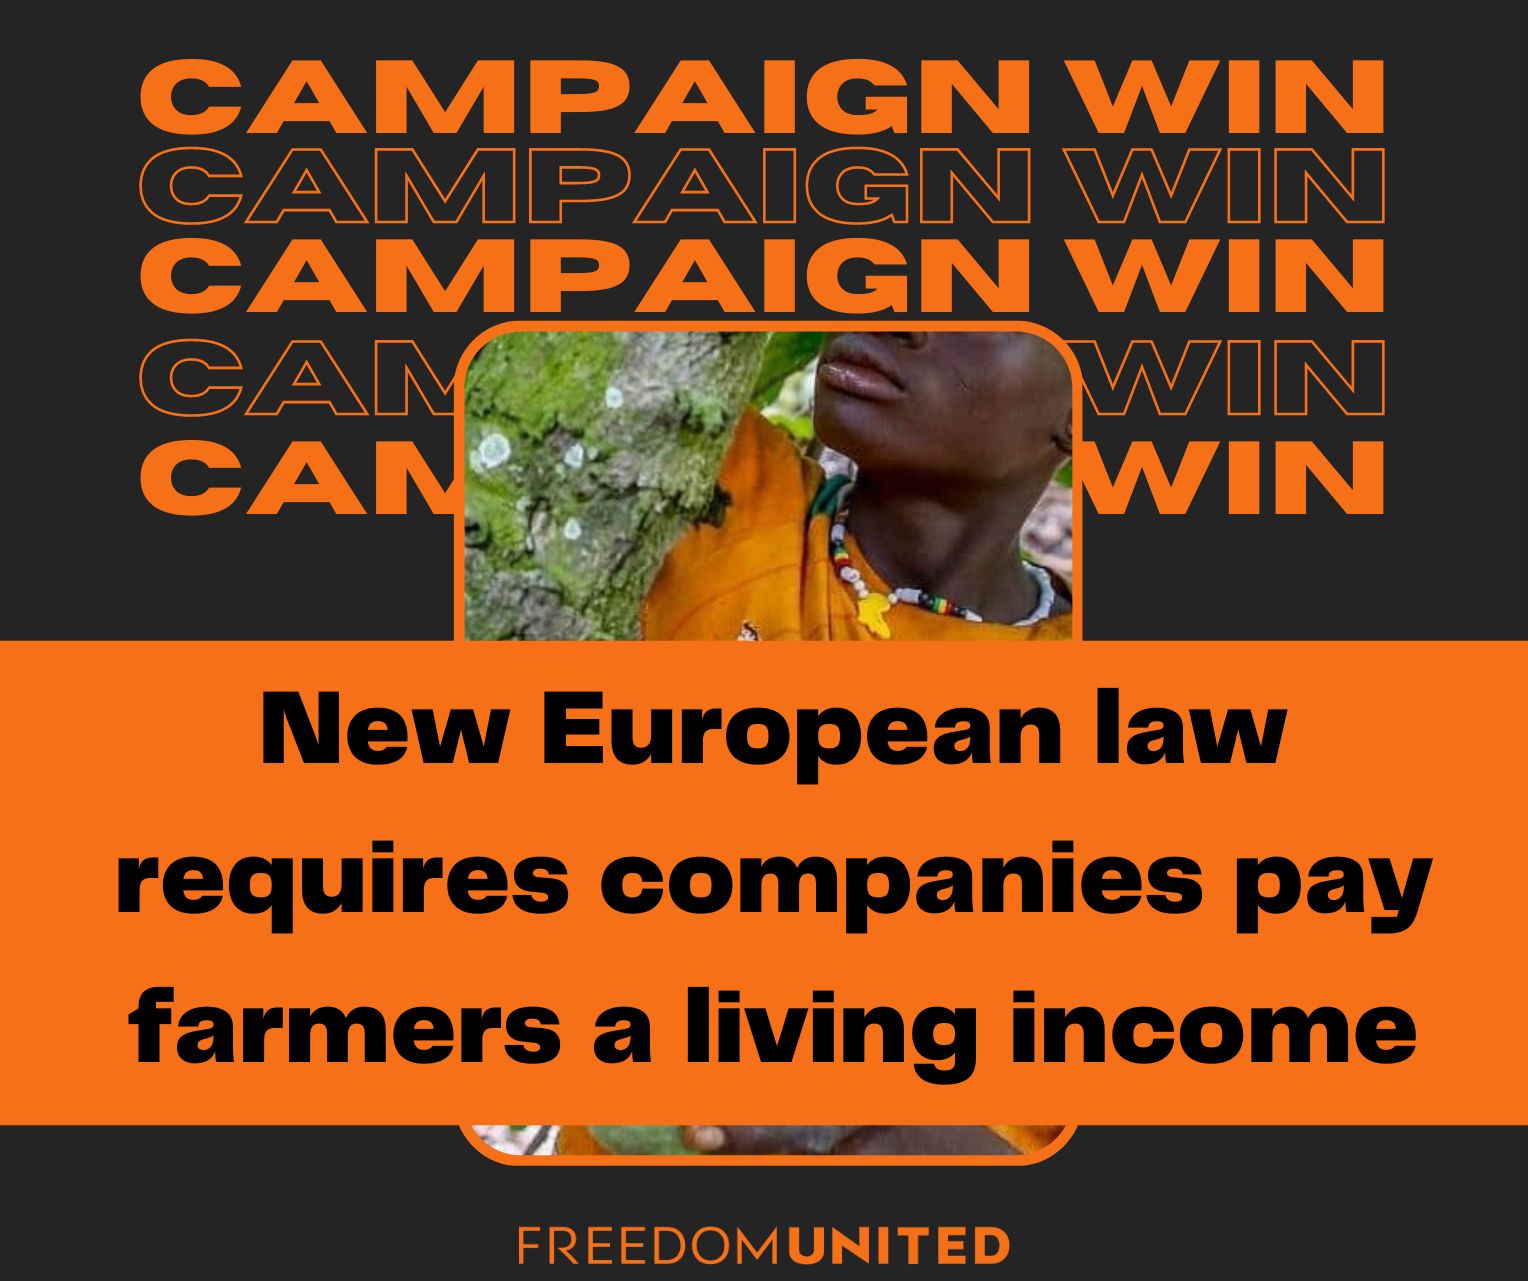 Living income for cocoa farmers win!